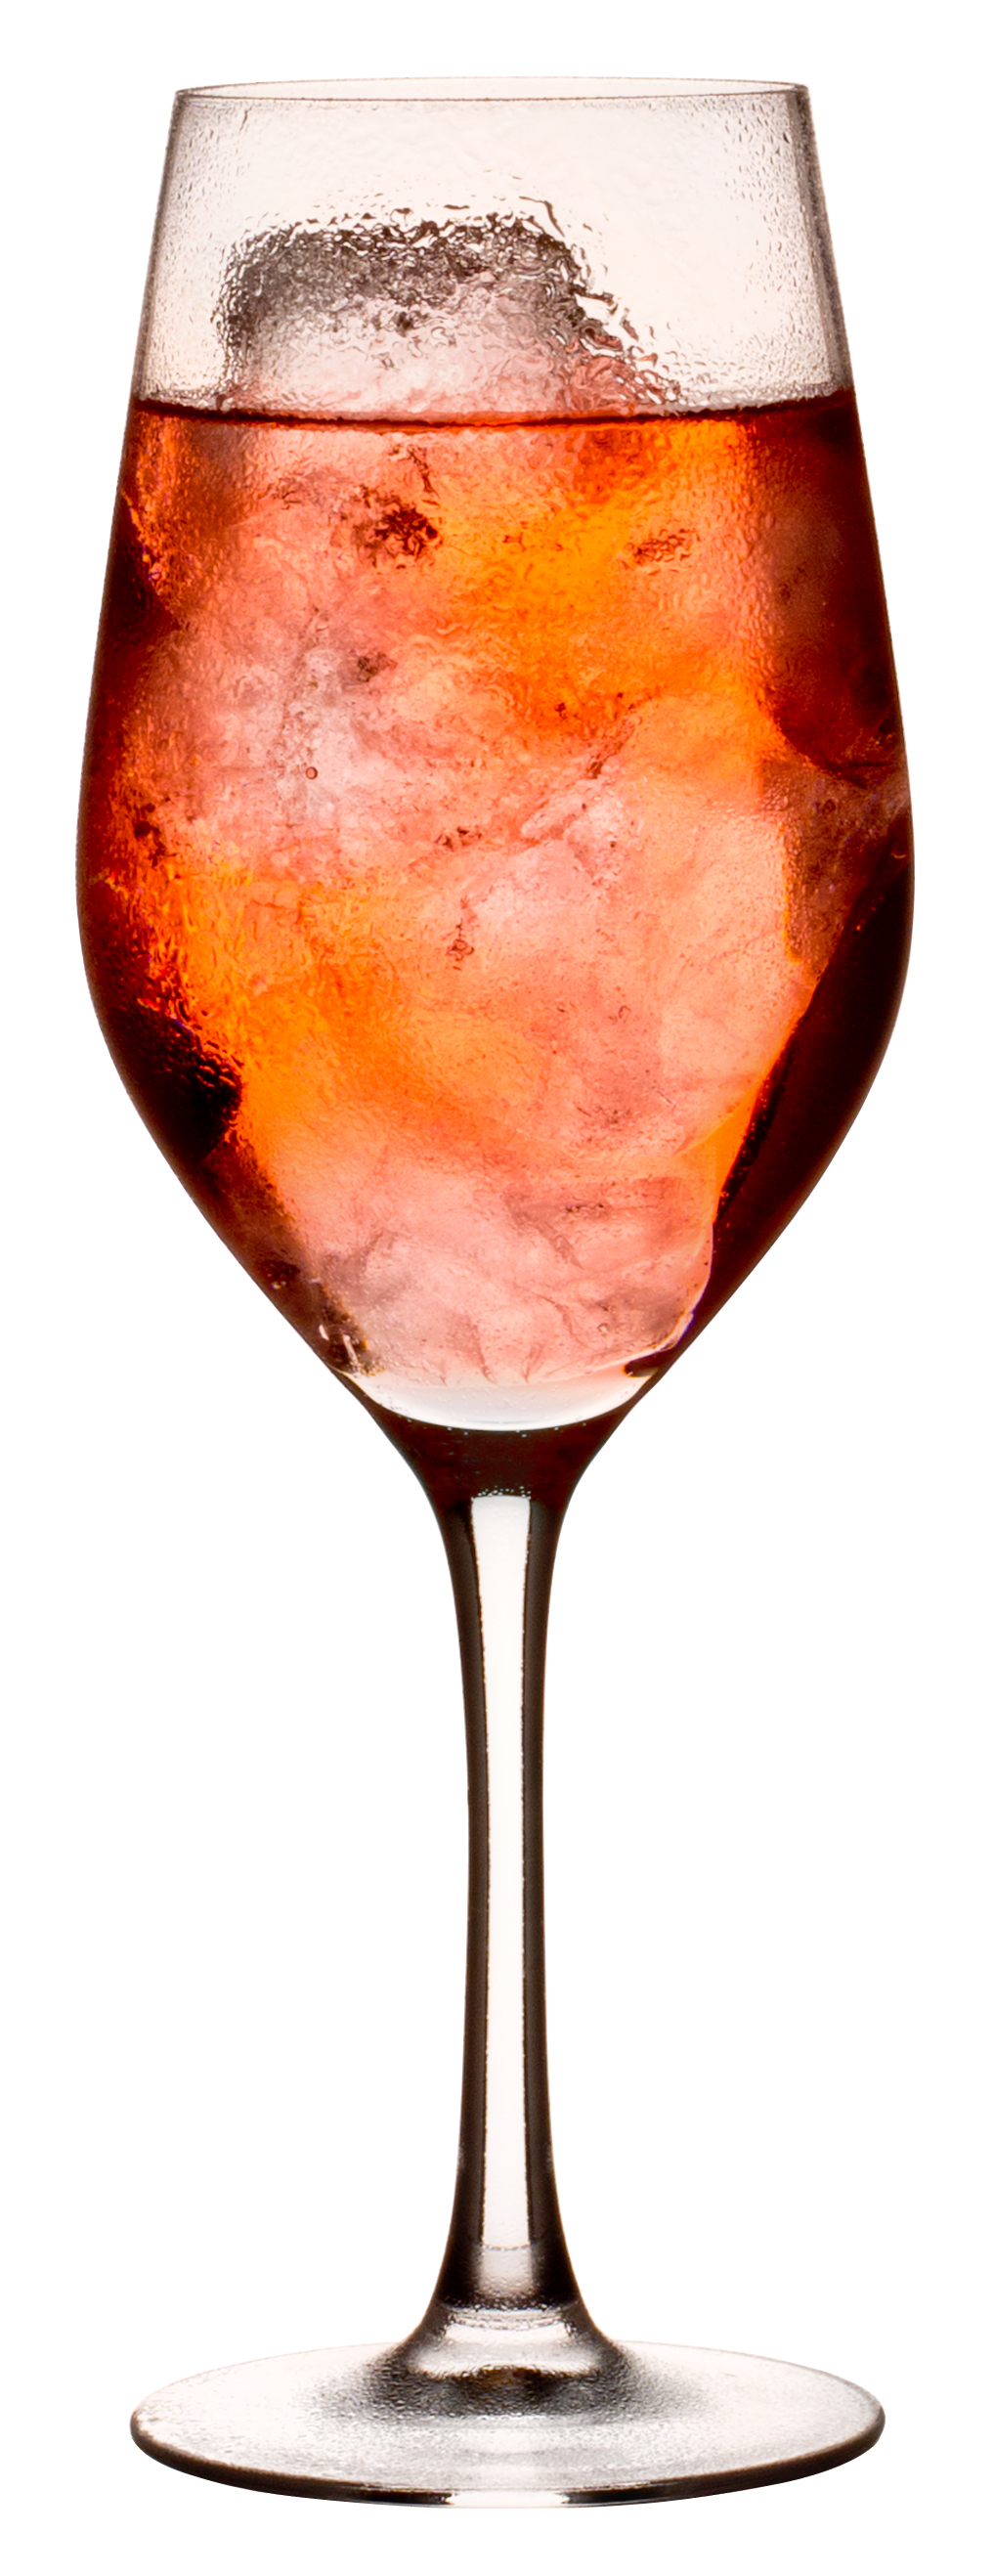 Wine glass, Mineral Arcoroc - 450ml, 0,1l + 0,2l CM (18 pcs.)